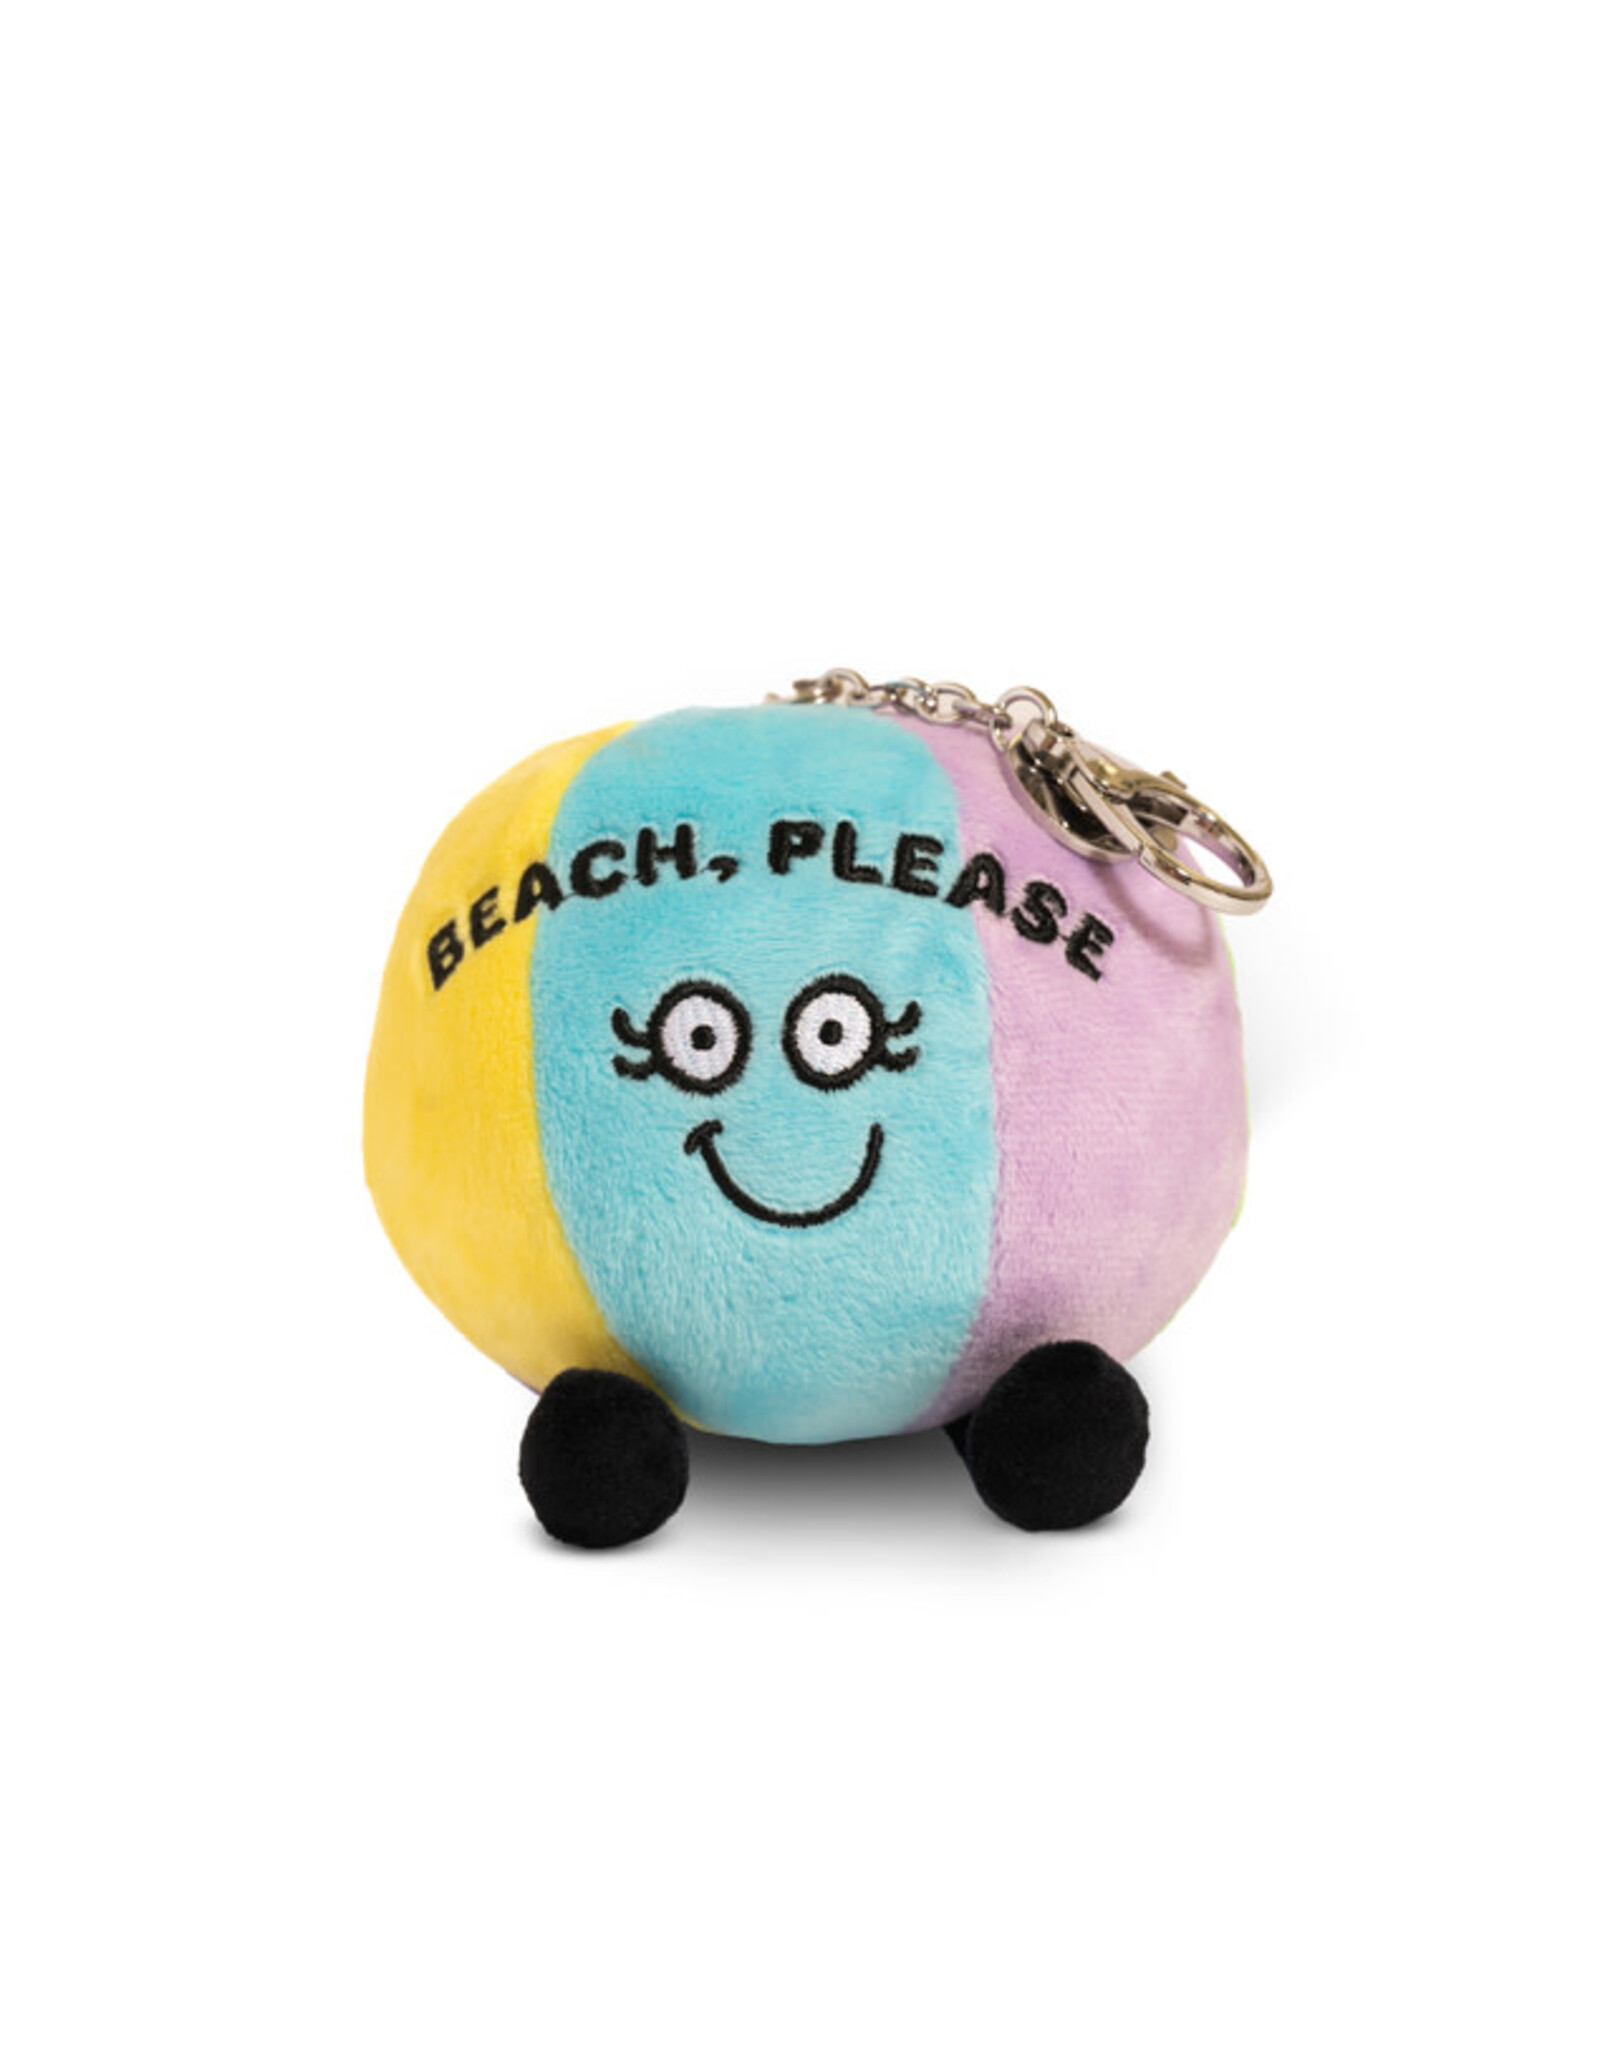 Punchkins Punchkins Bites Beach, Please Beach Ball Bag Charm